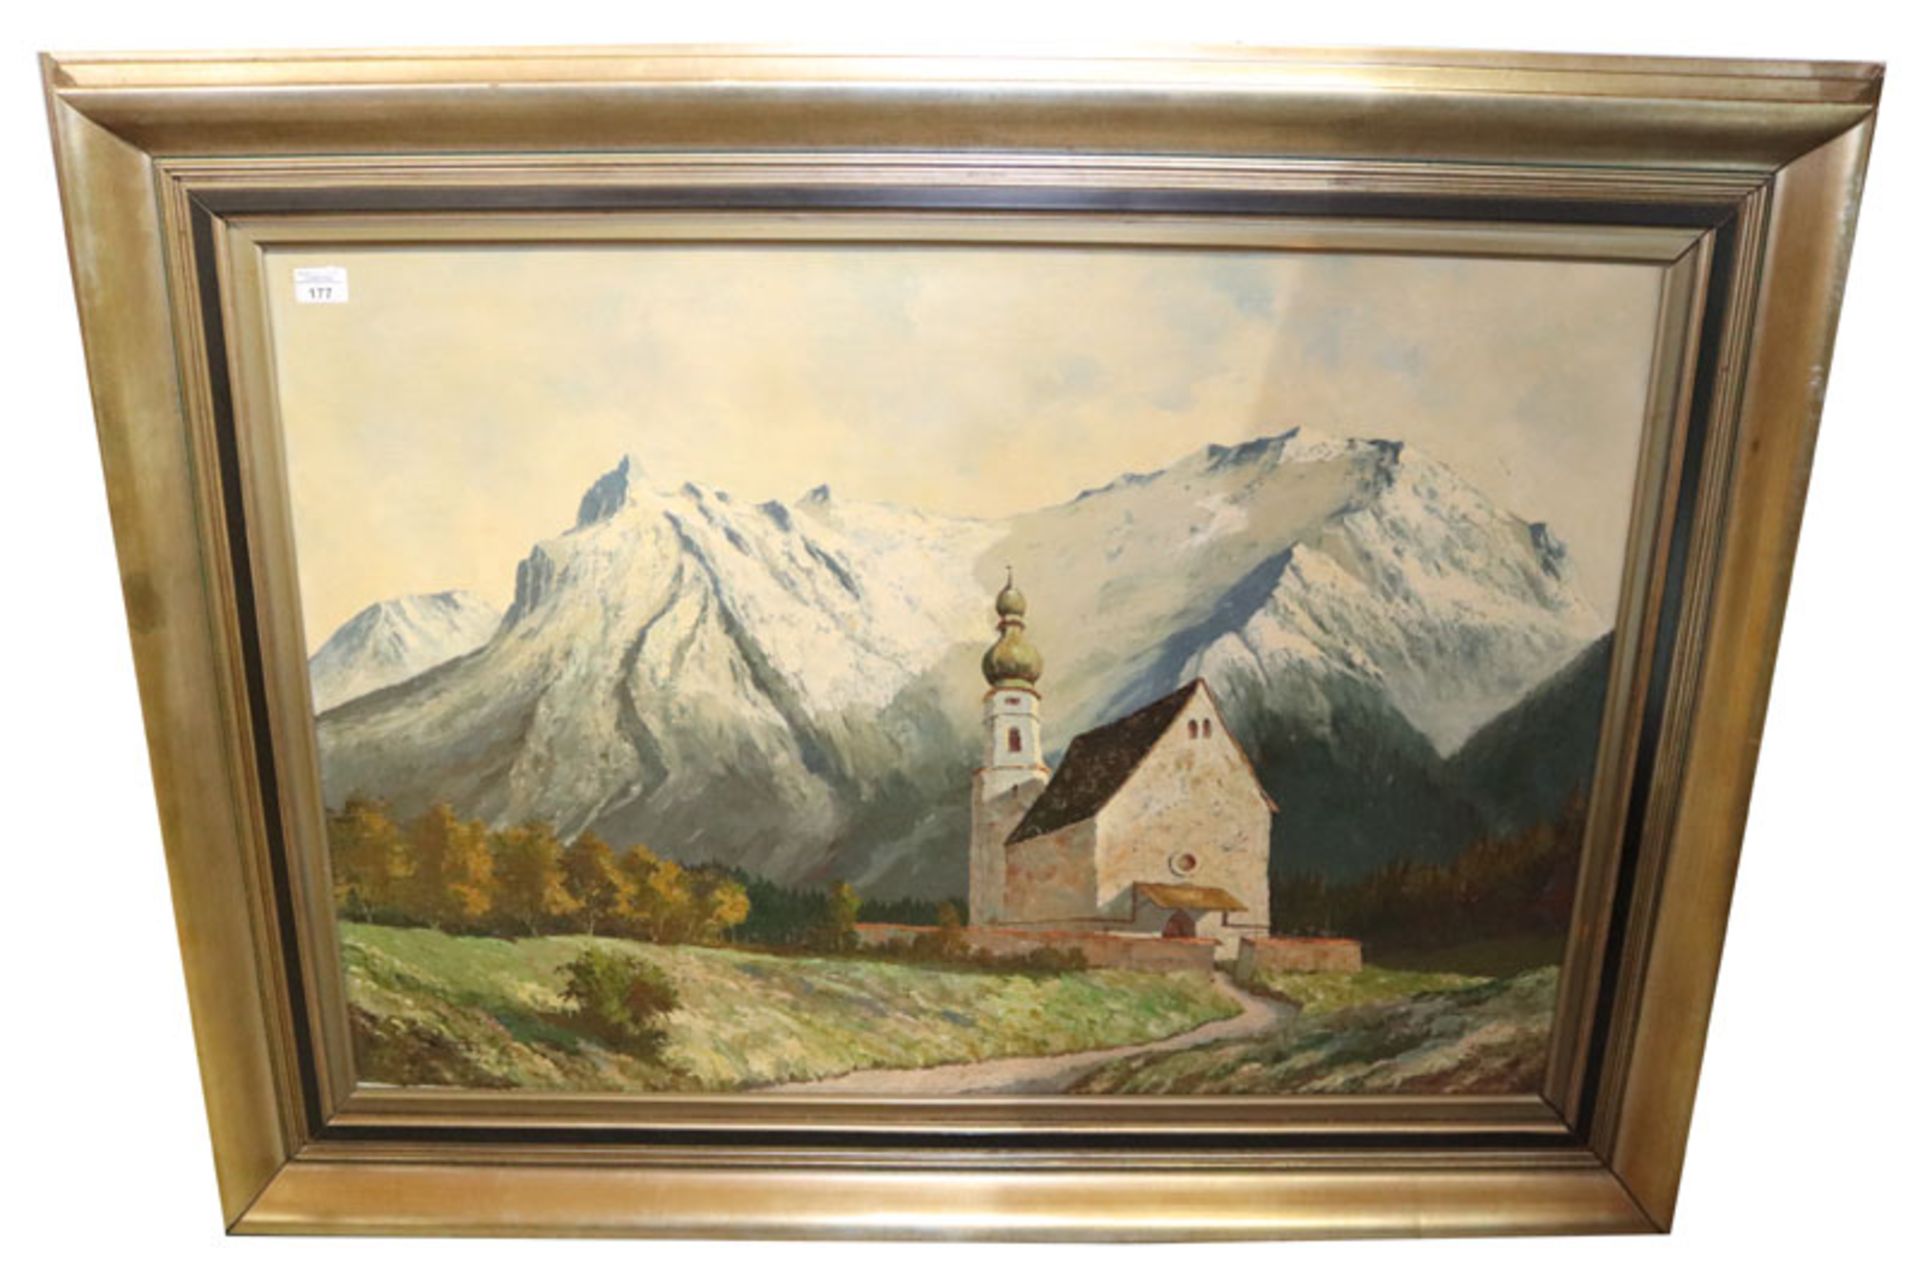 Gemälde ÖL/LW 'Kapelle vor Hochgebirge', unleserlich signiert, gerahmt, Rahmen beschädigt, incl.